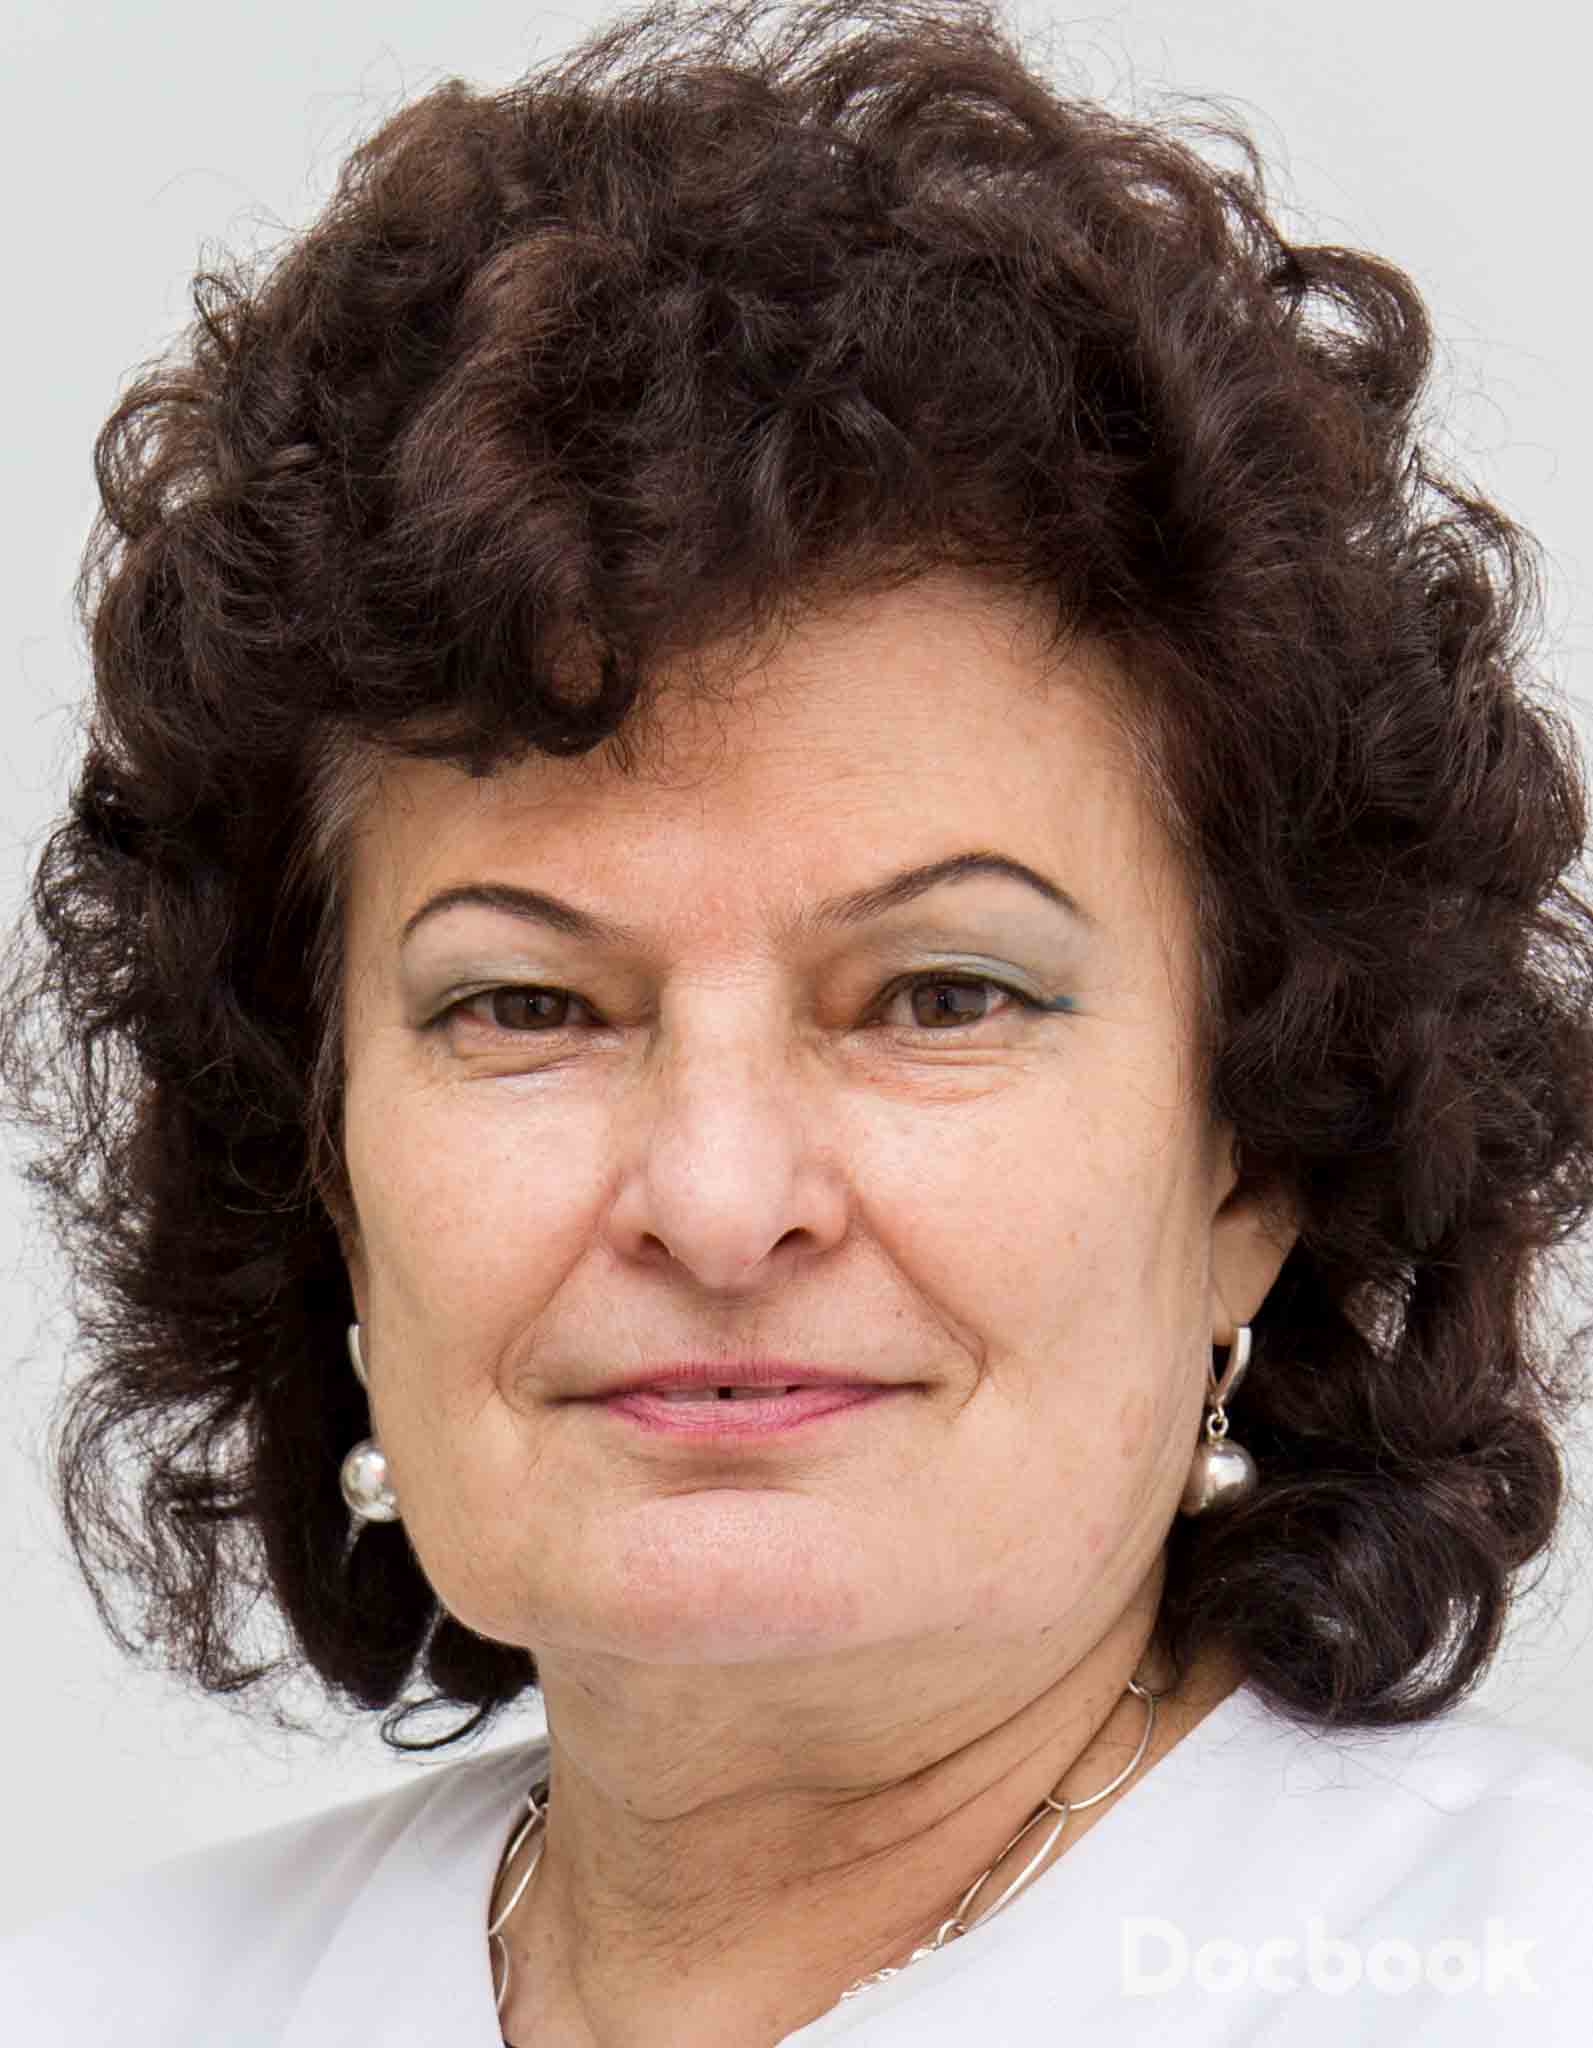 Prof. Ana Campeanu